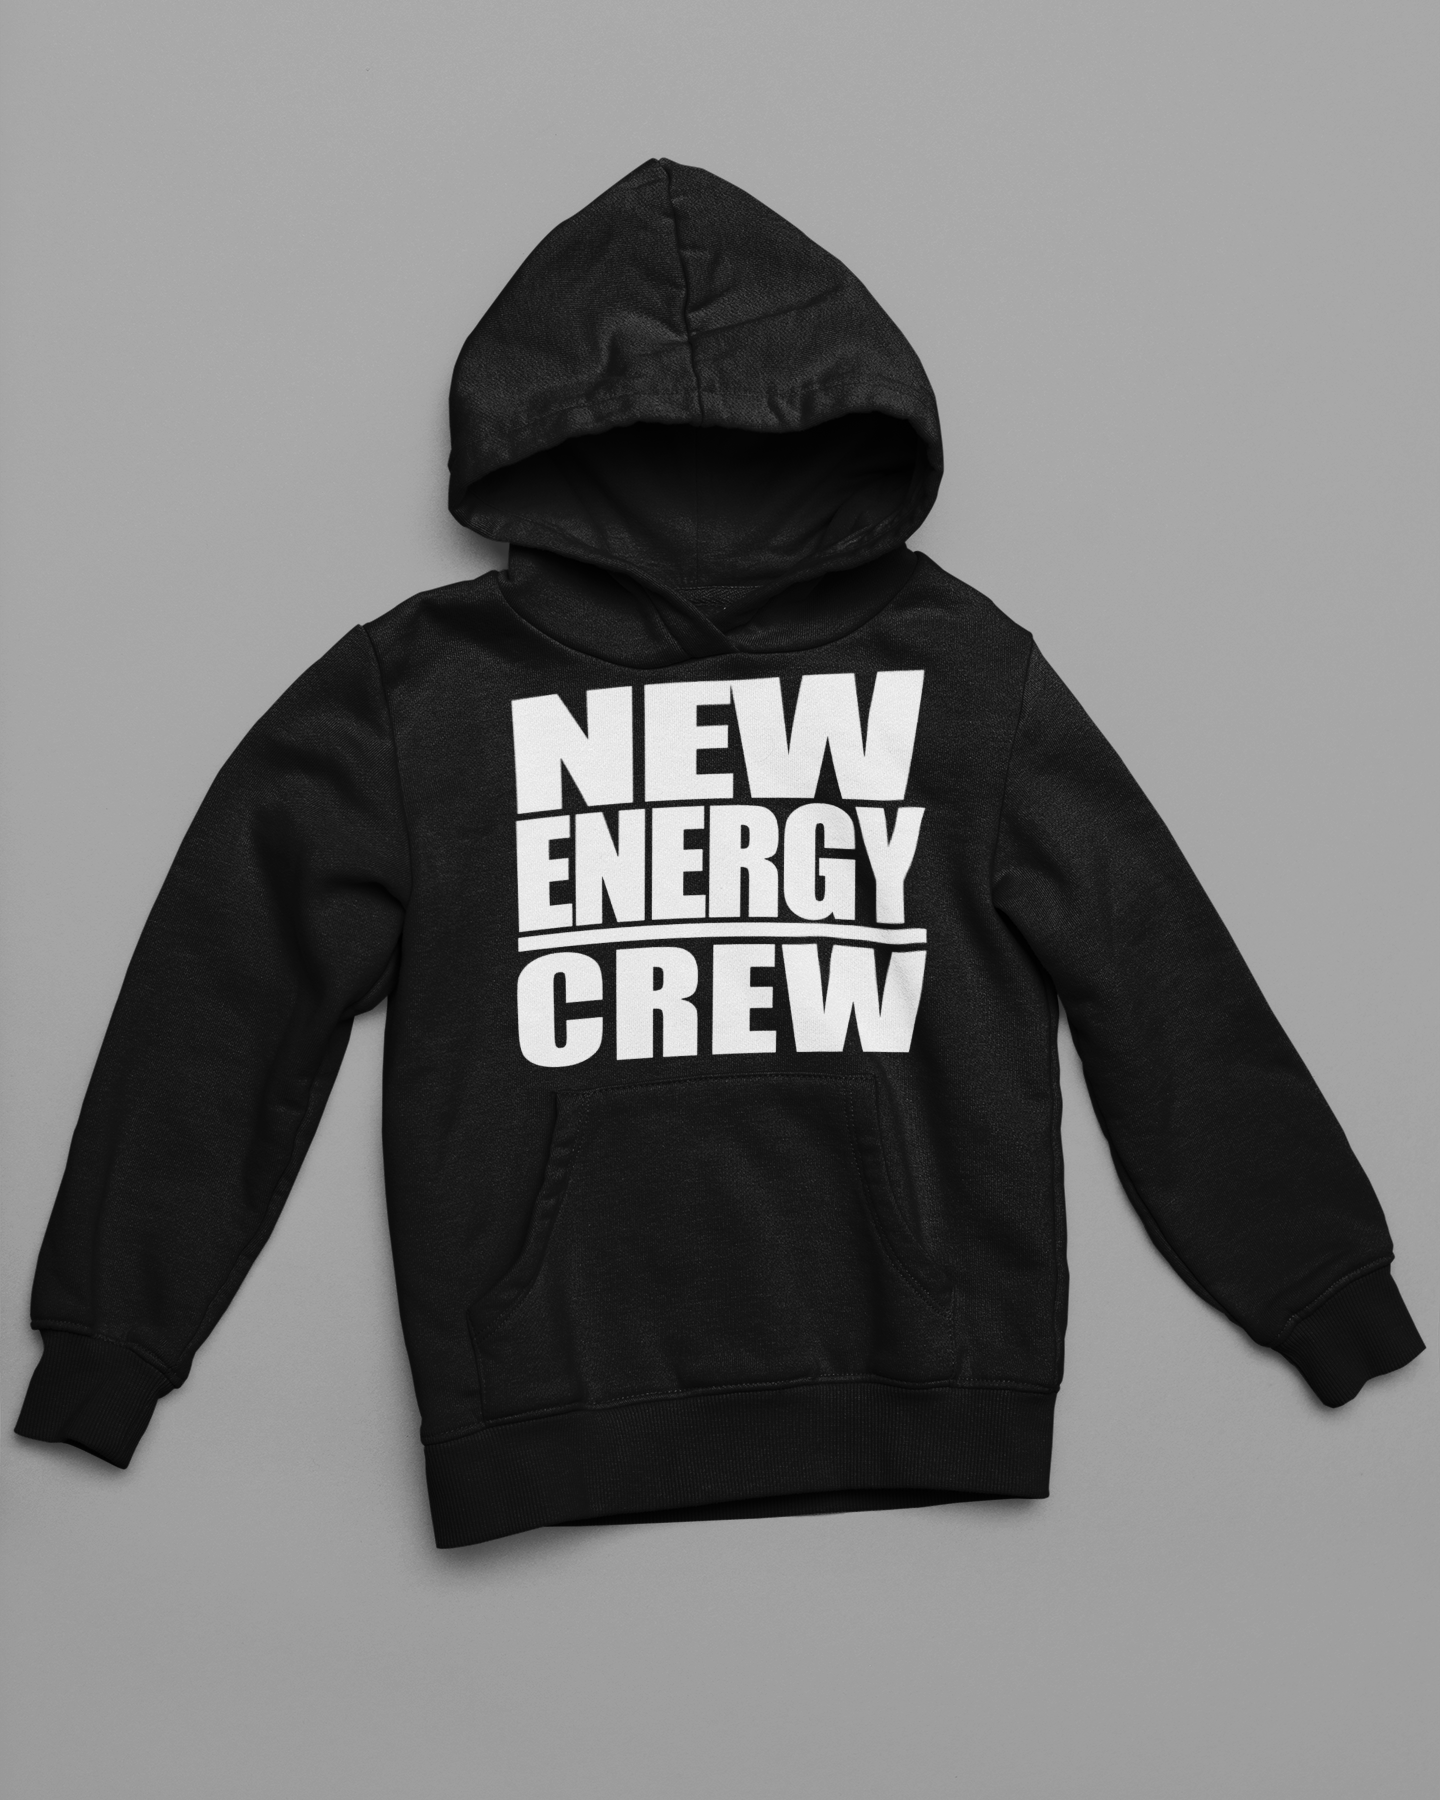 New Energy Crew Hoodie.